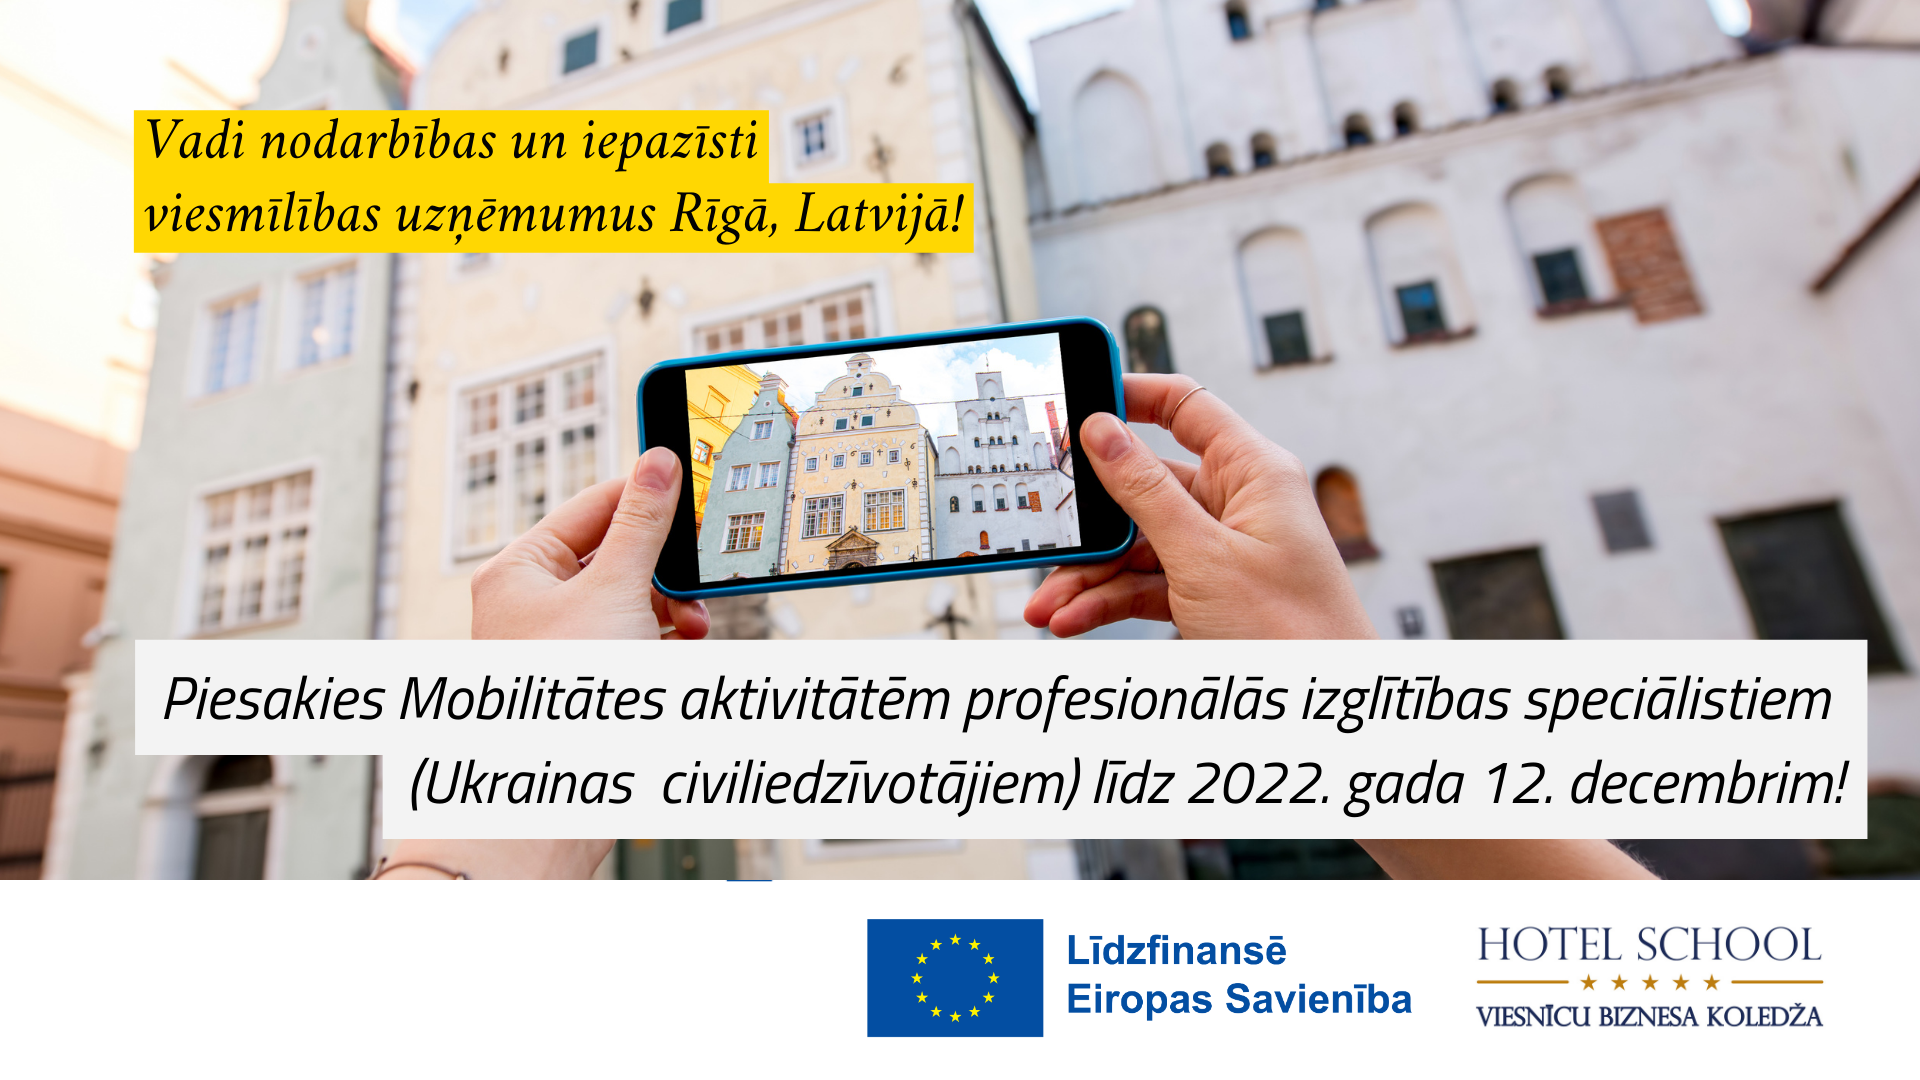 Erasmus VET Specialist Mobility Call 2 (No. 2021-1-LV01-KA121-VET-000006163)